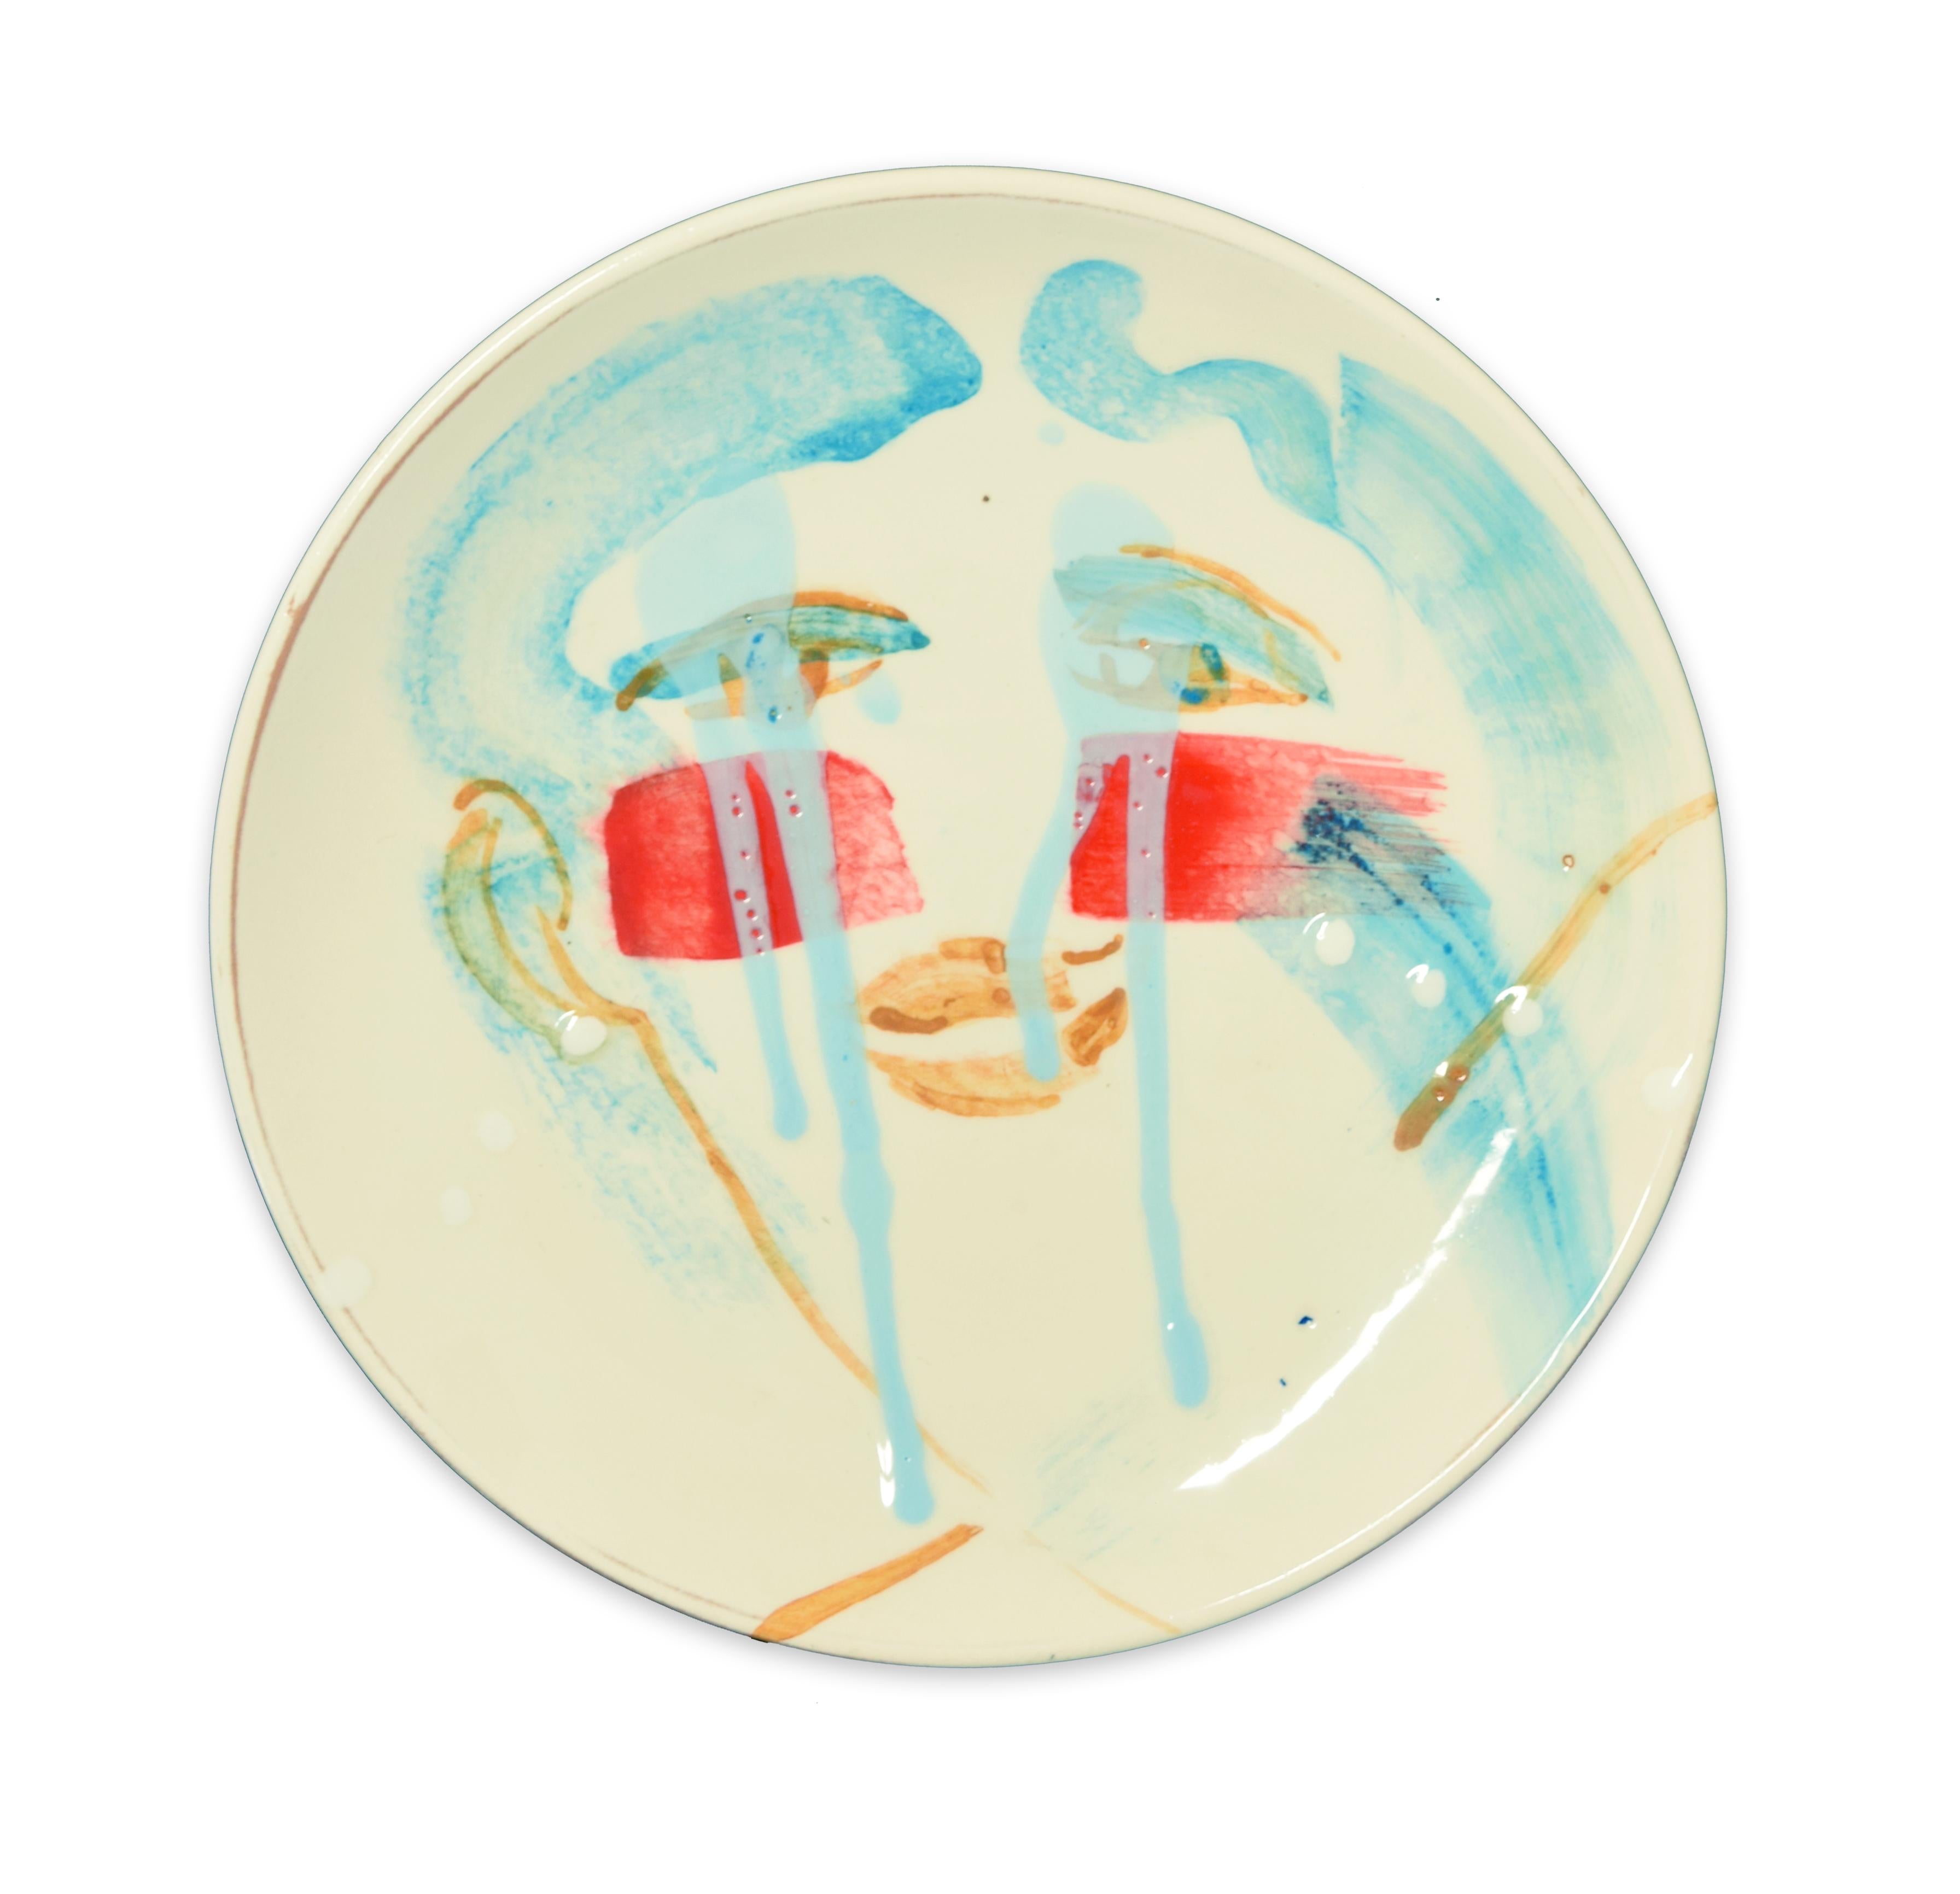 Teardrops - Hand-made Flat Ceramic Dish by A. Kurakina - 2019 - Art by Anastasia Kurakina